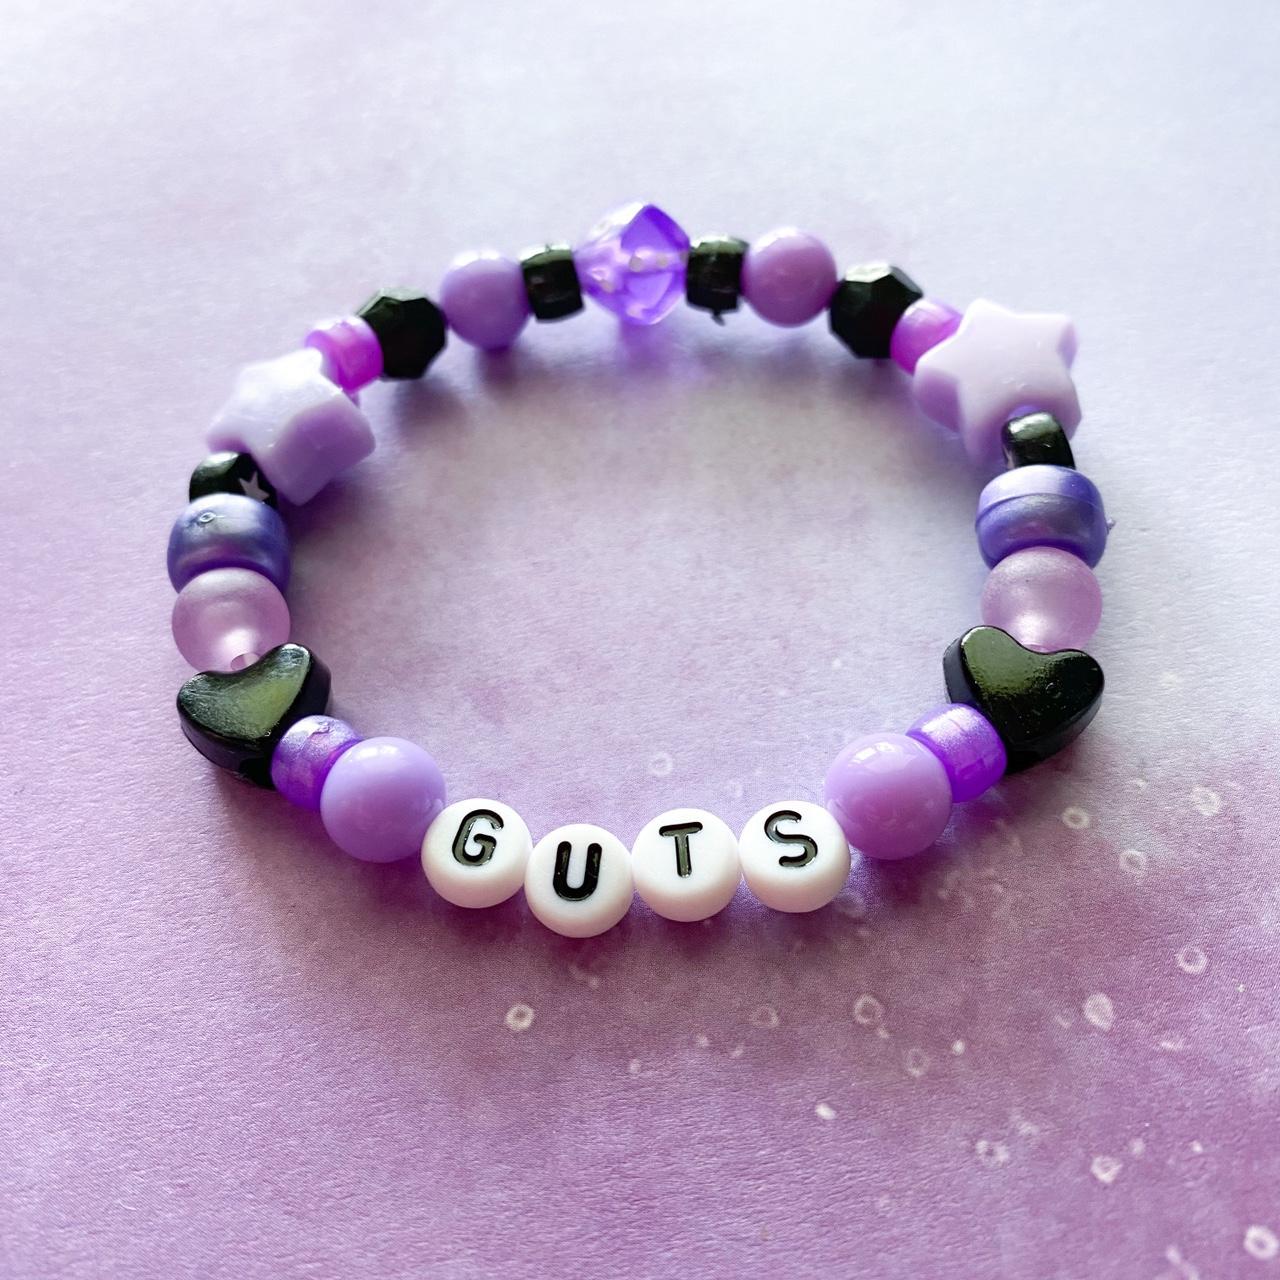 GUTS olivia rodrigo inspired bracelet #guts - Depop